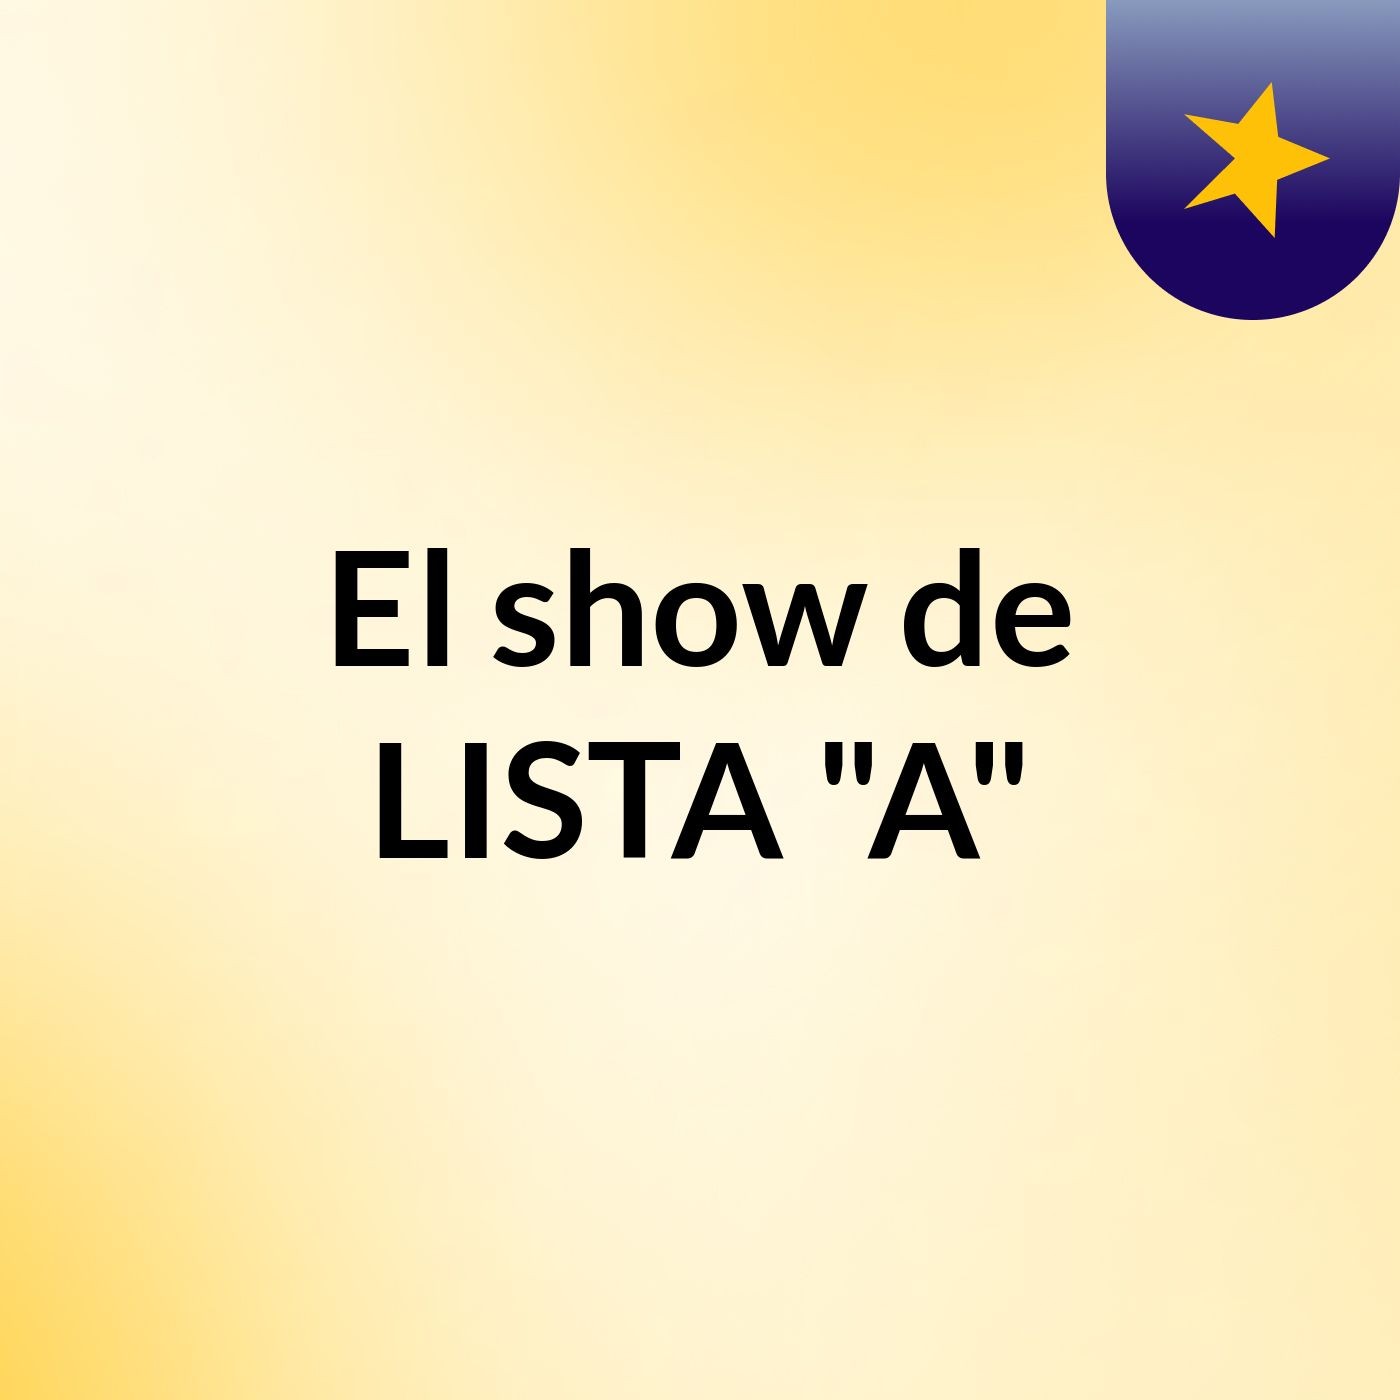 El show de LISTA "A"